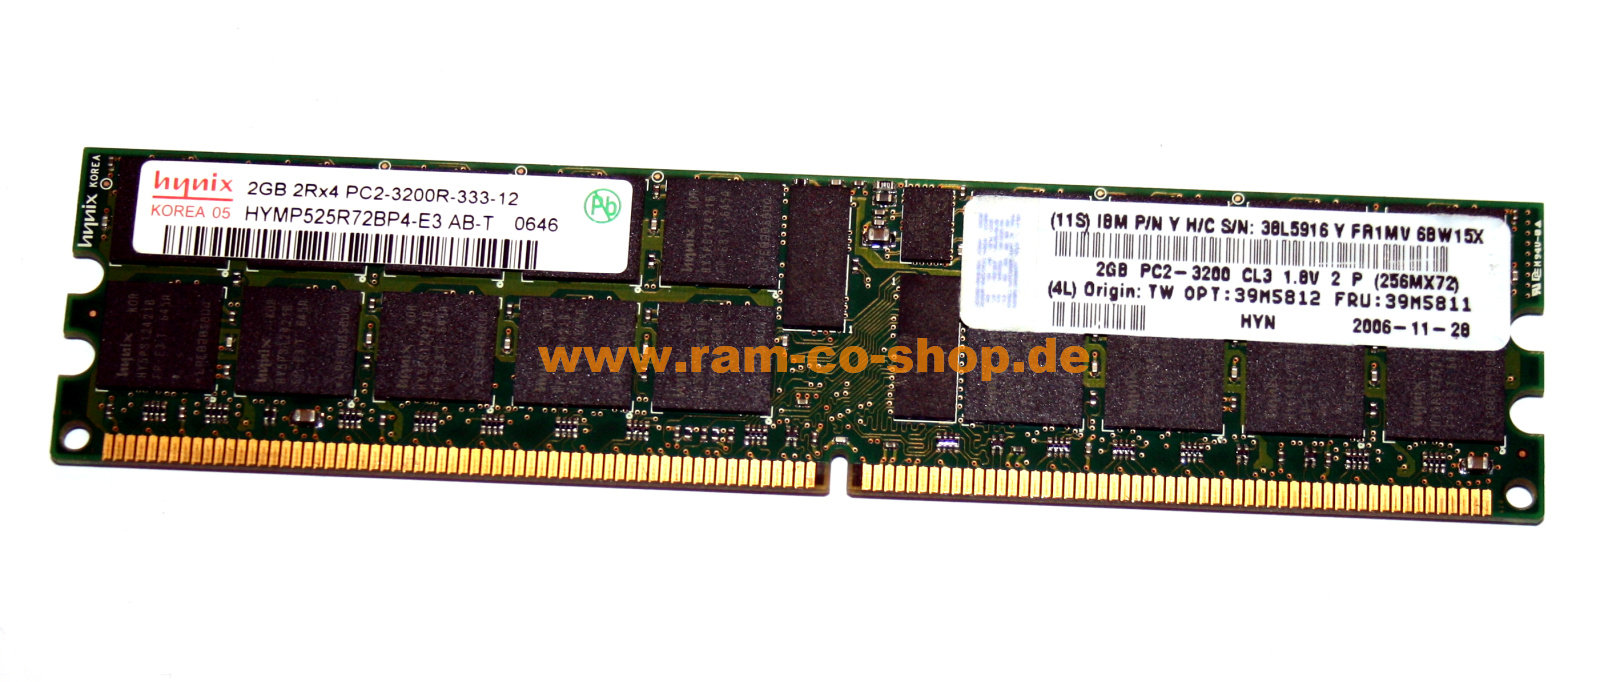 38L5916 2GB  DDR2 PC2-3200R-333 2Rx4 ECC Registered IBM Server memory 